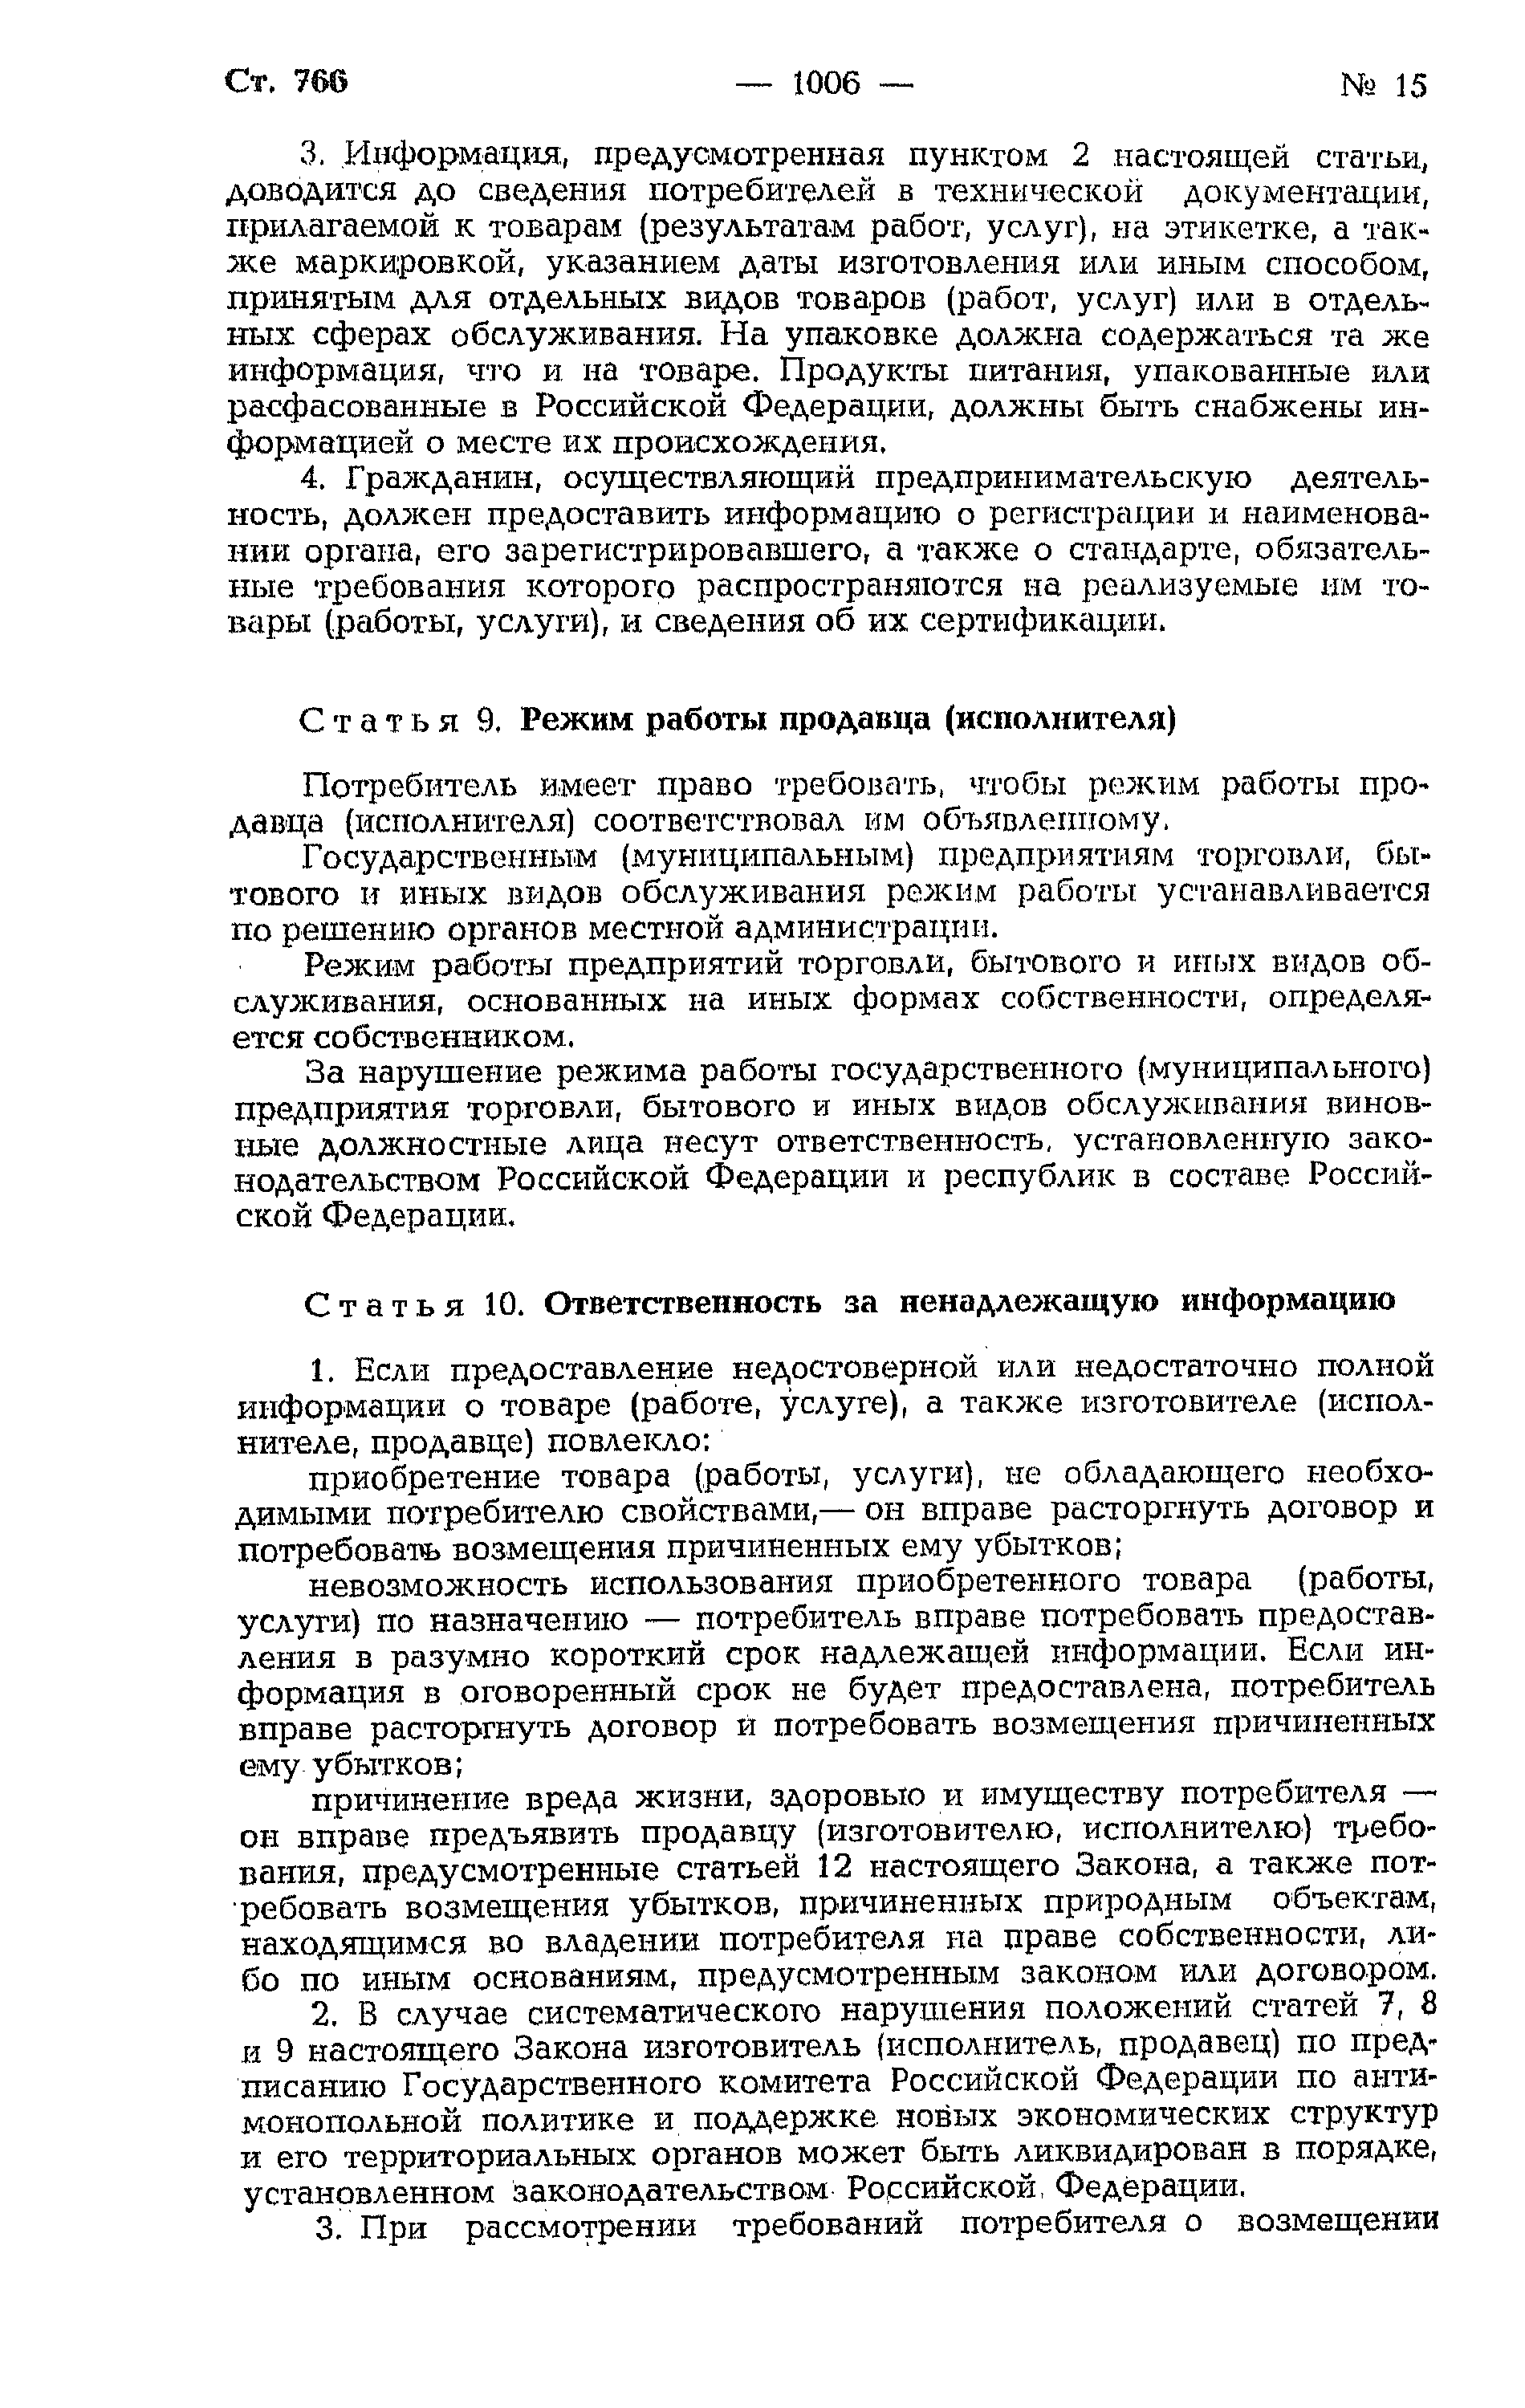 Закон Российской Федерации 2300-I